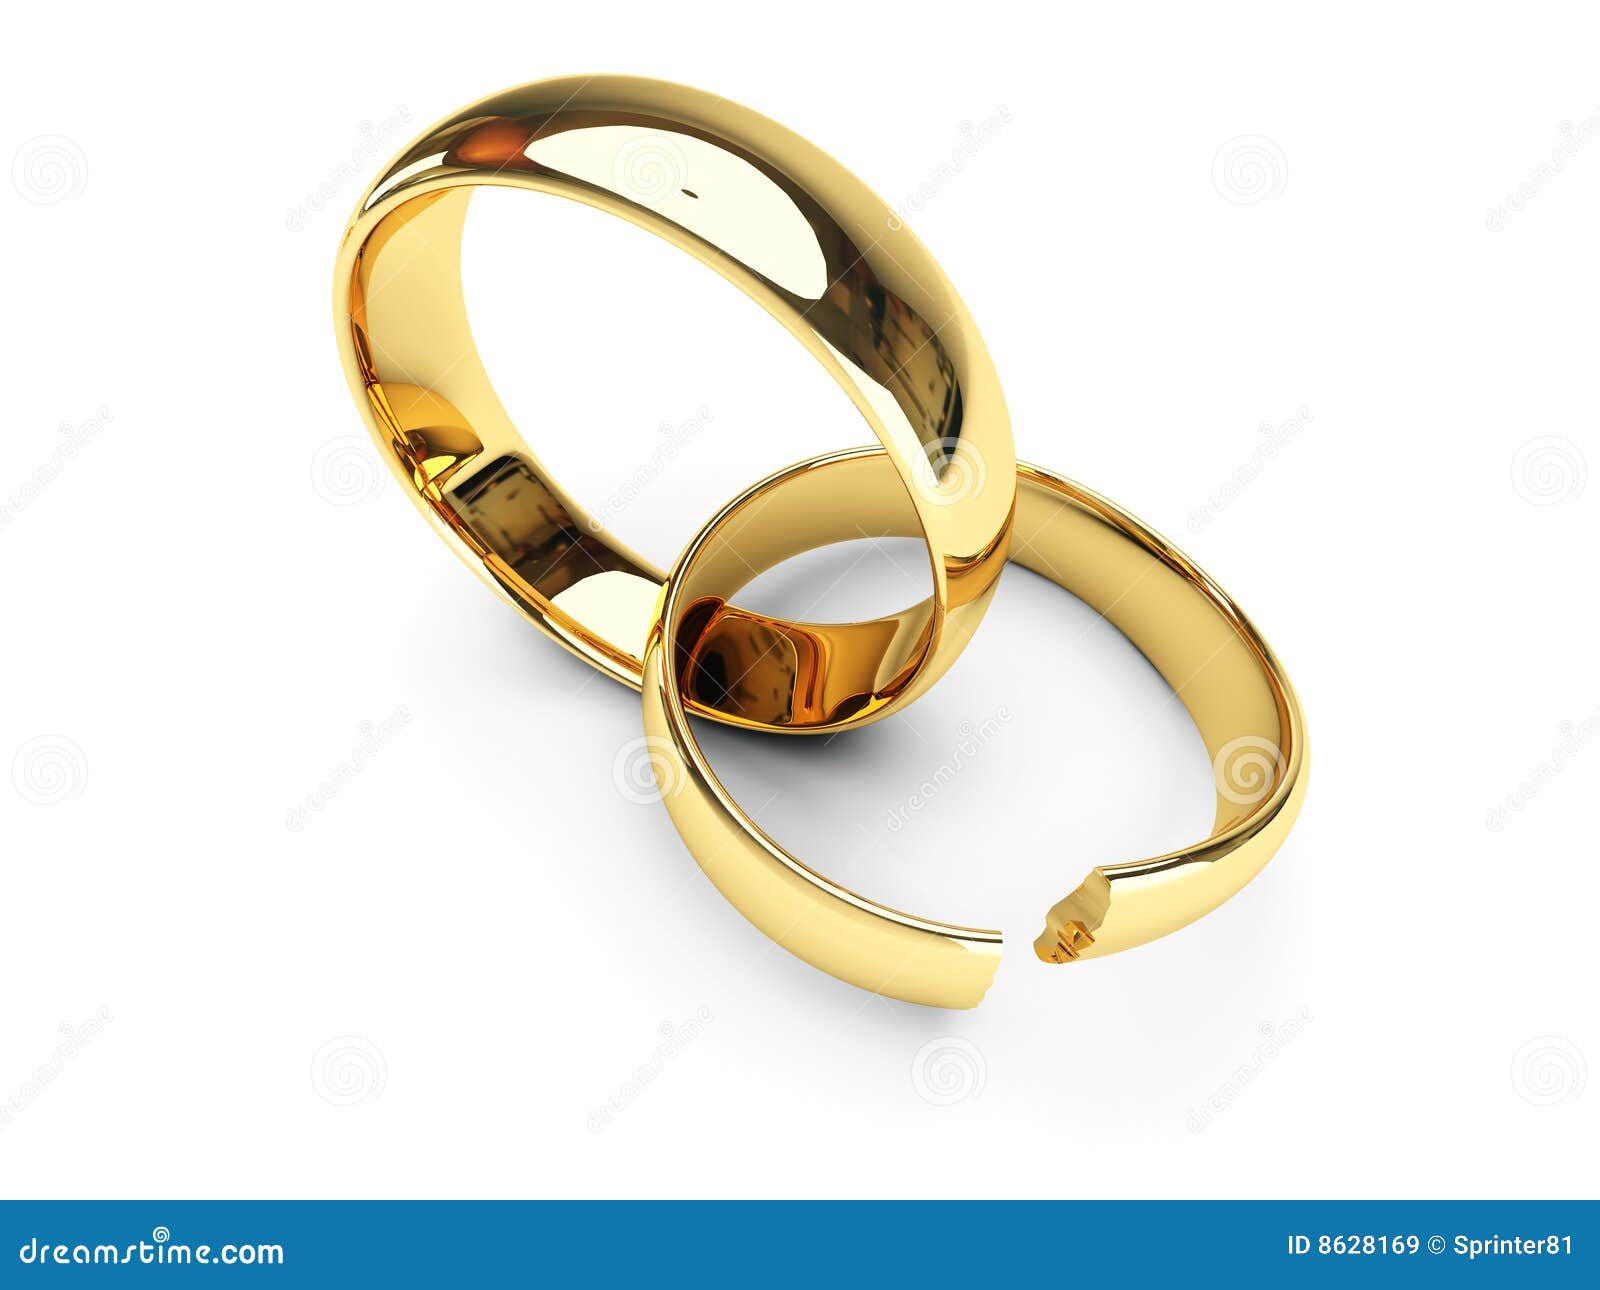 picture of broken wedding rings